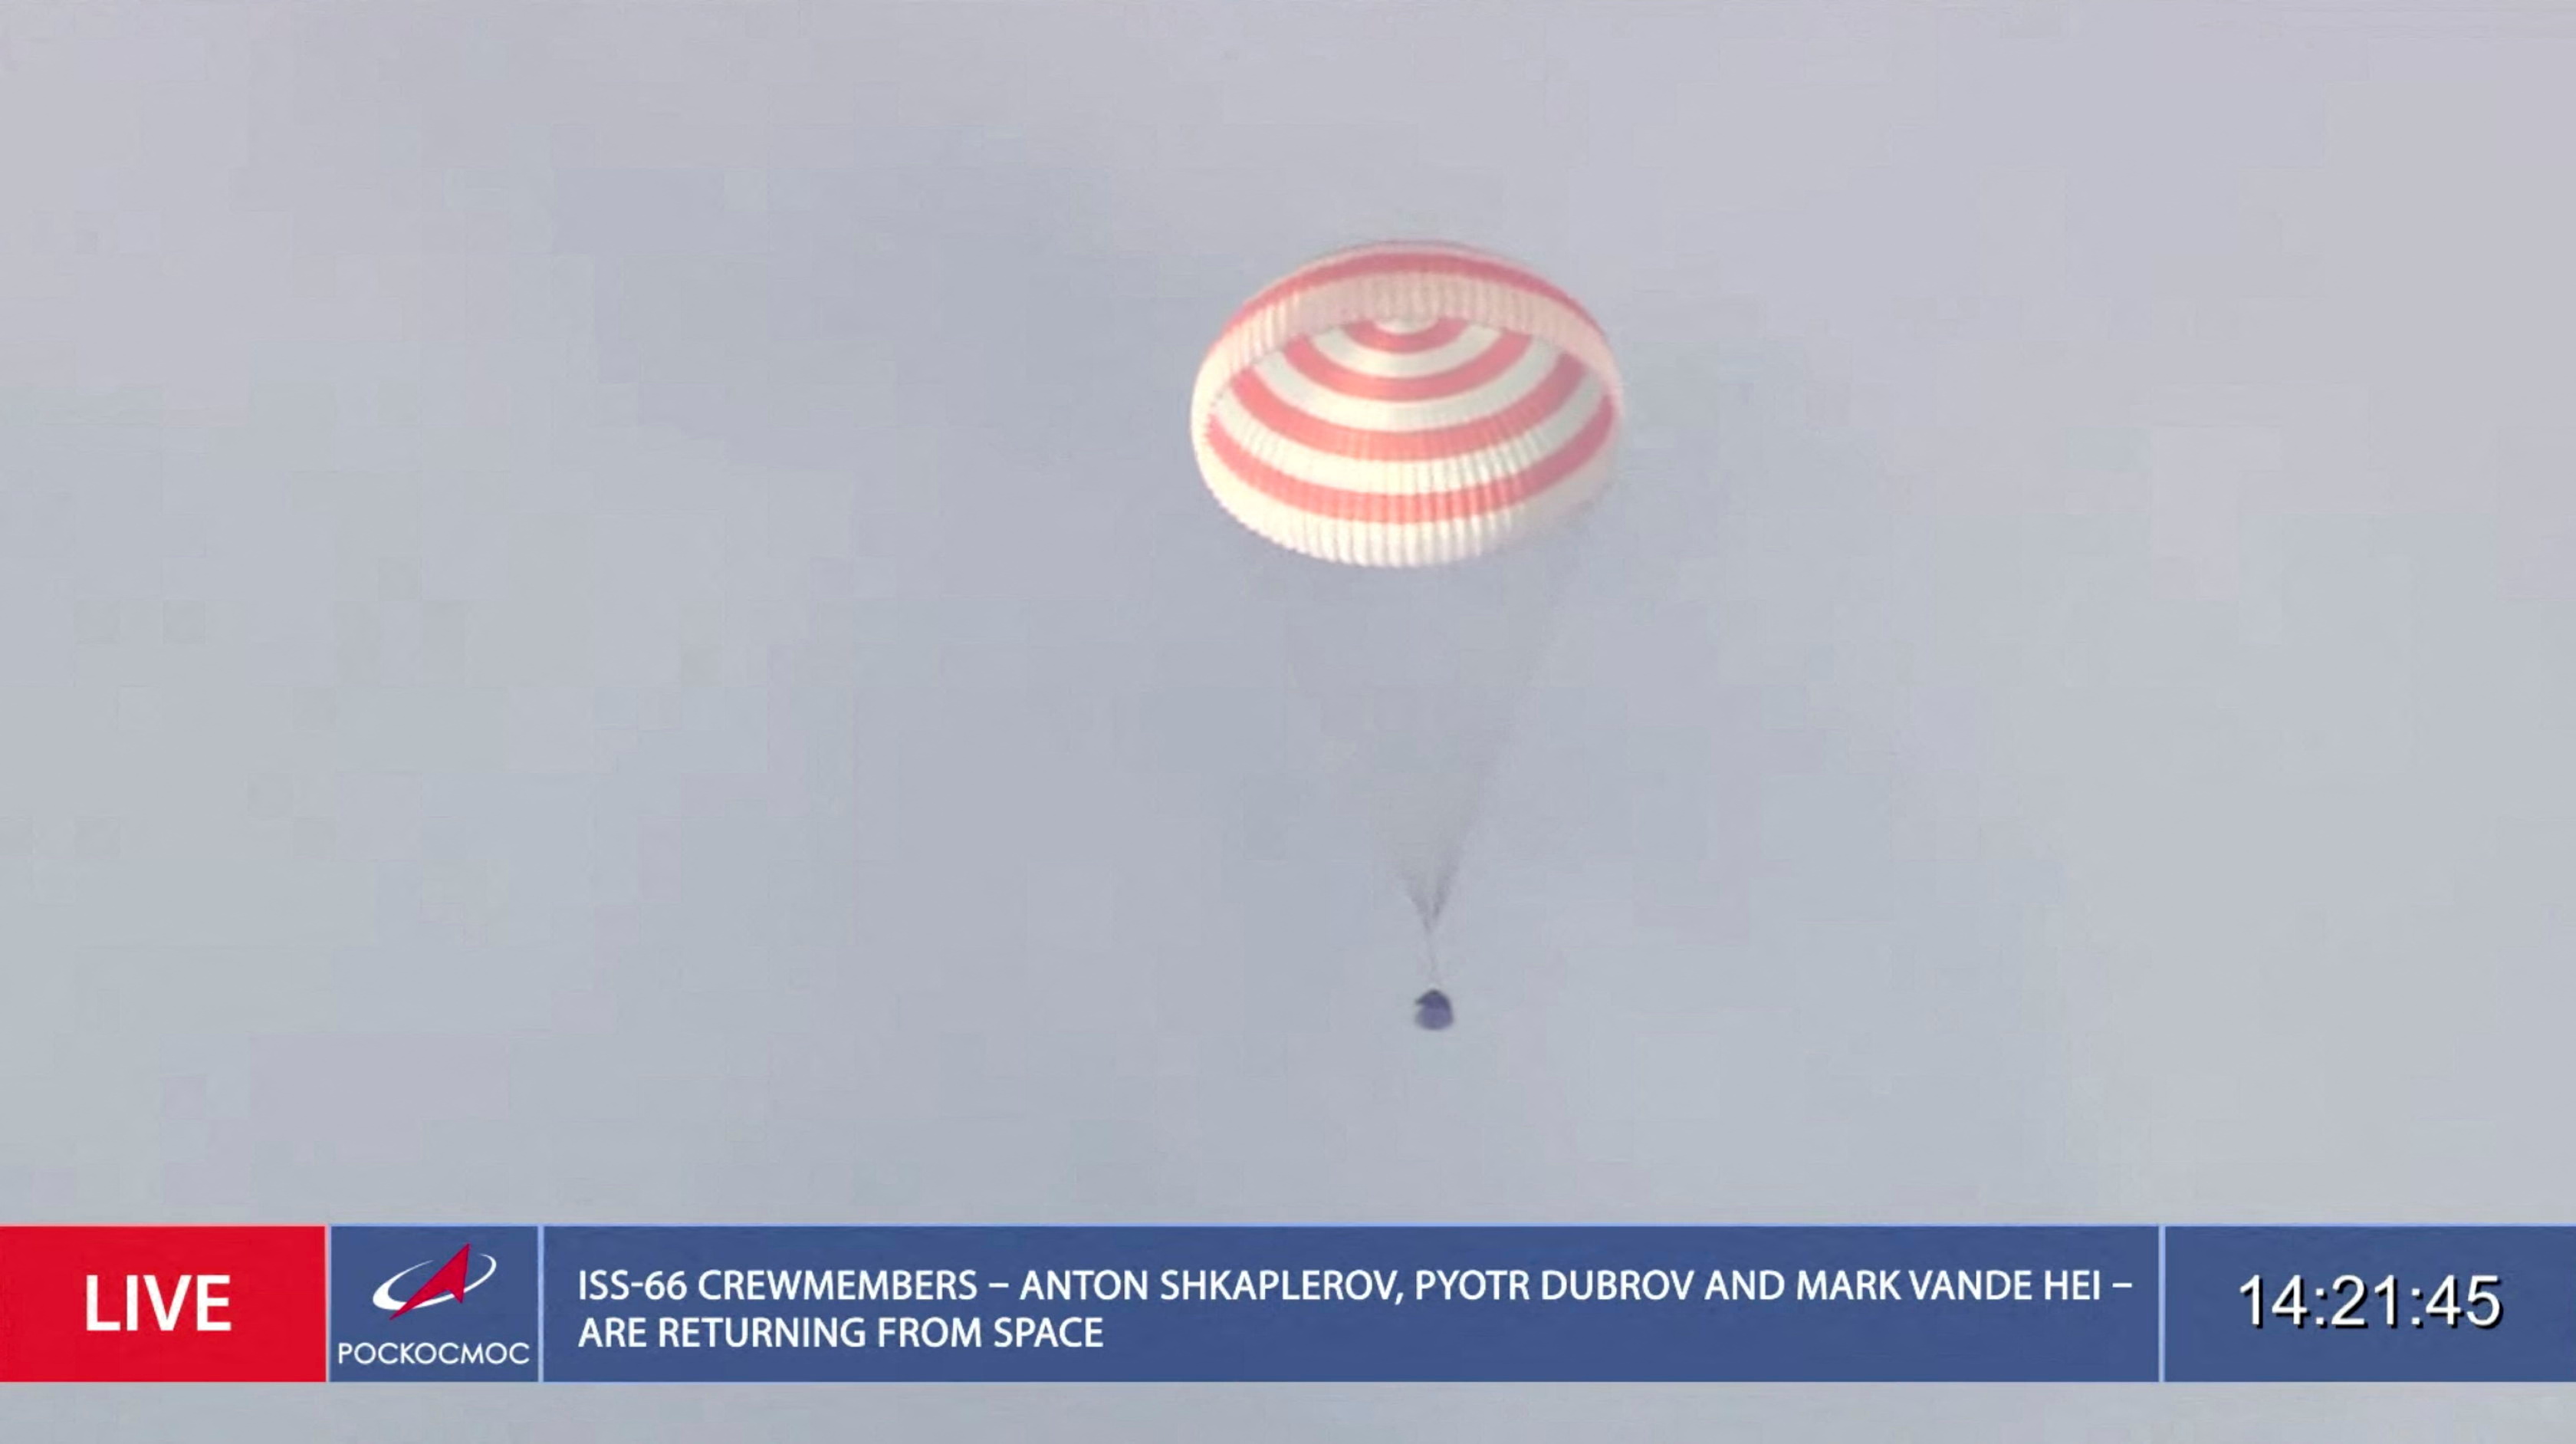 La cápsula espacial Soyuz MS-19 que transporta a miembros de la tripulación de la Estación Espacial Internacional (ISS), el astronauta de la NASA Mark Vande Hei y los cosmonautas de Roscosmos Anton Shkaplerov y Pyotr Dubrov, desciende bajo un paracaídas en un área remota fuera de Zhezkazgan, Kazajstán. Roscosmos/Folleto a través de REUTERS